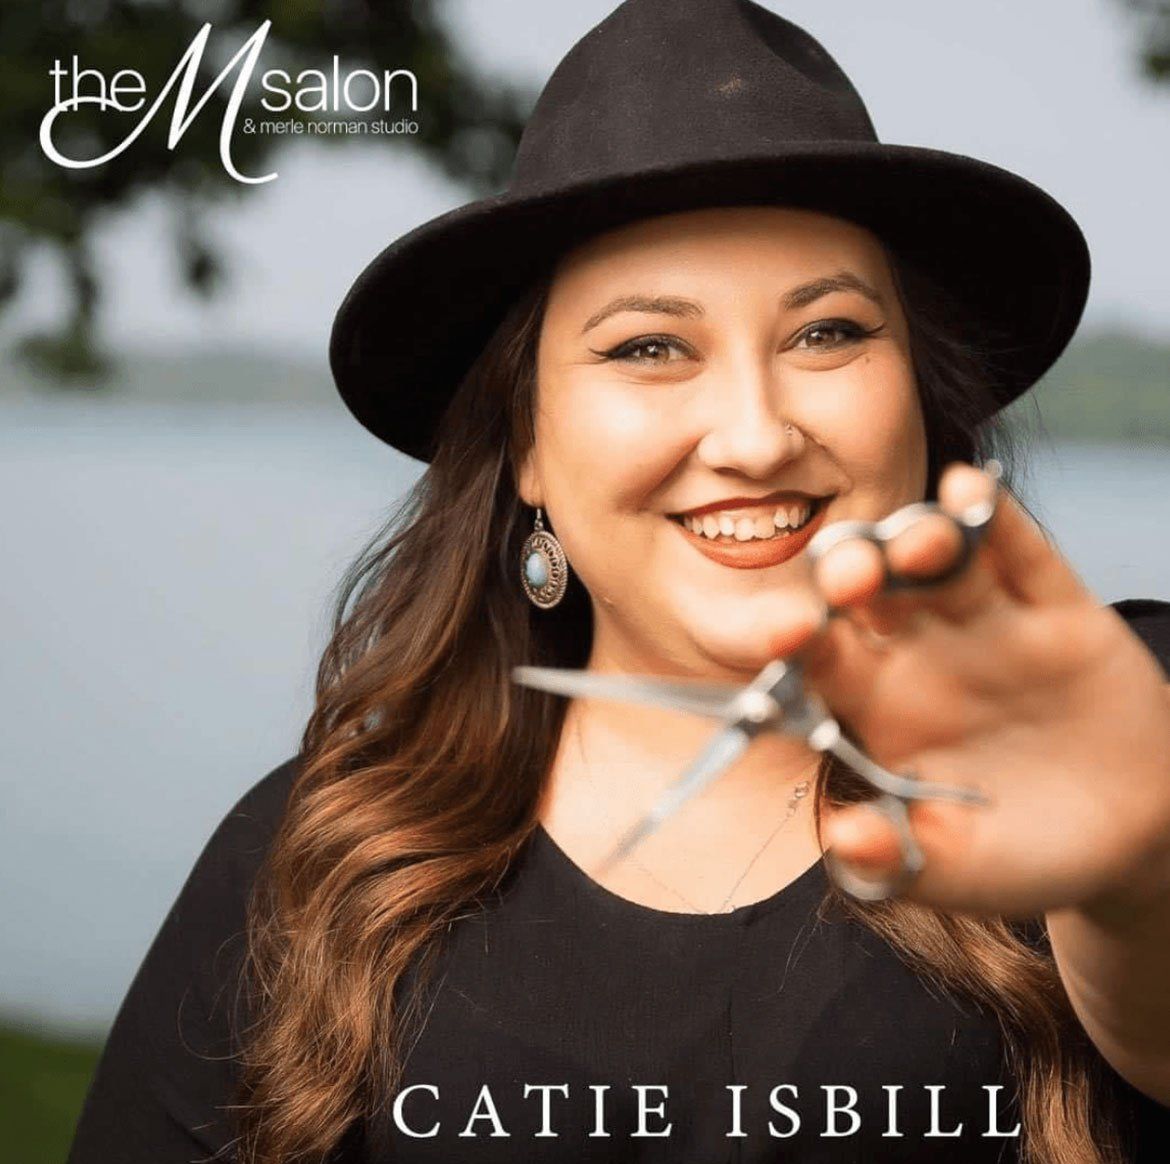 Catie Isbill